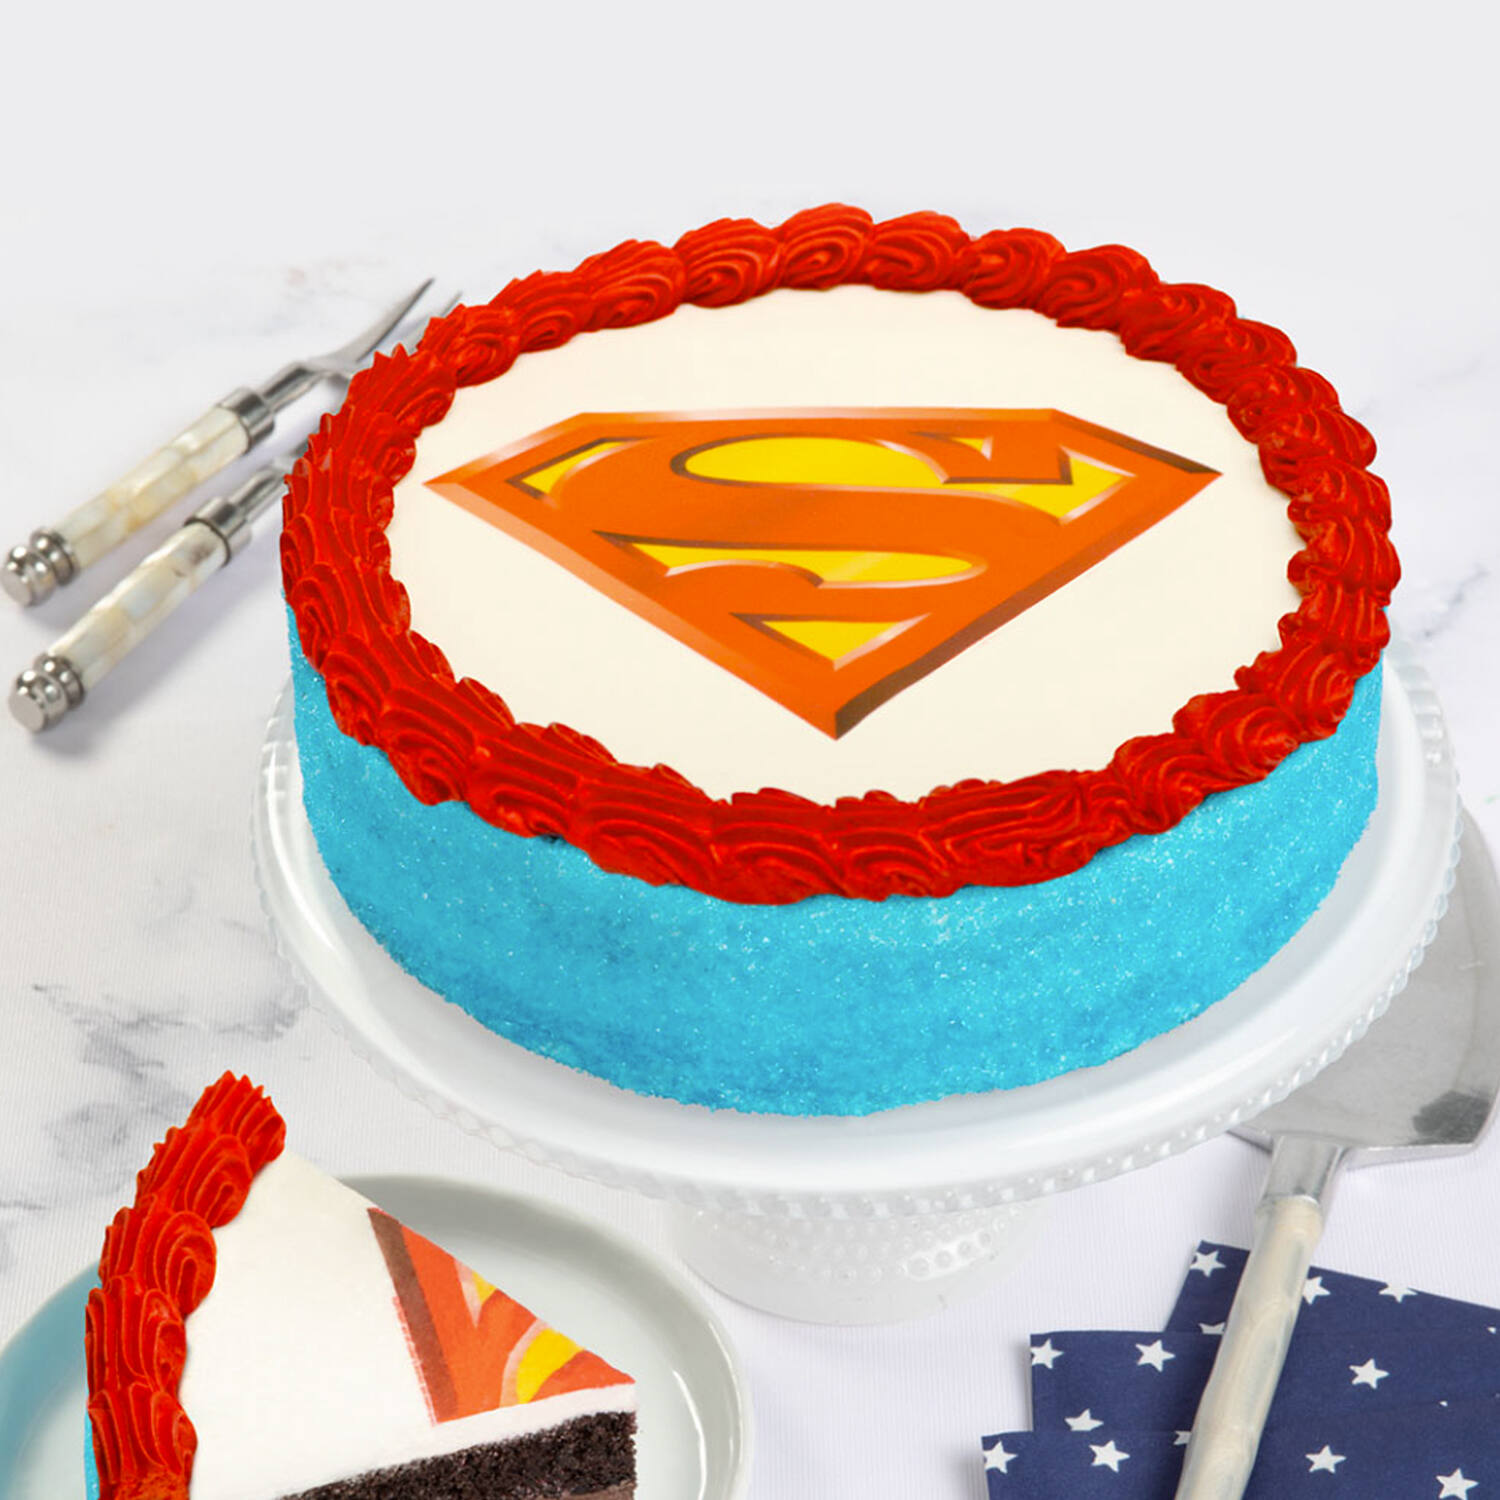 Superman cake - Decorated Cake by Sugarkissedcakery - CakesDecor